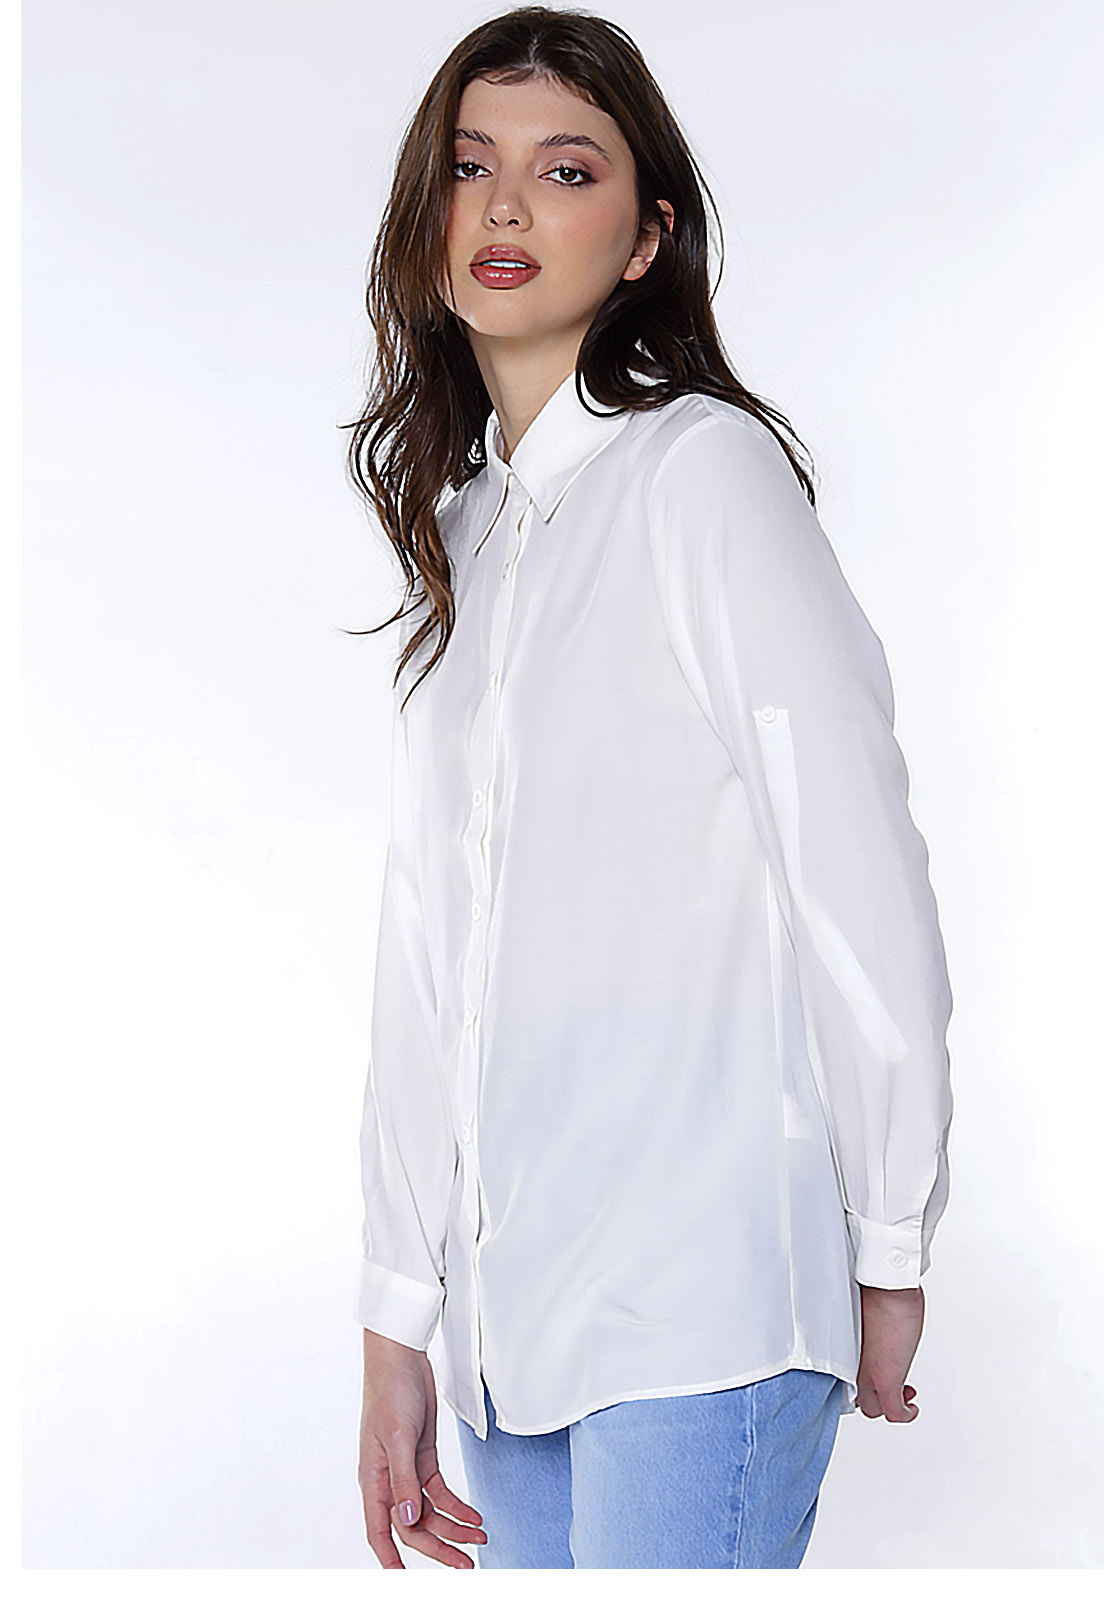 Pokiha-Camisas brancas de retalho para mulheres, manga comprida